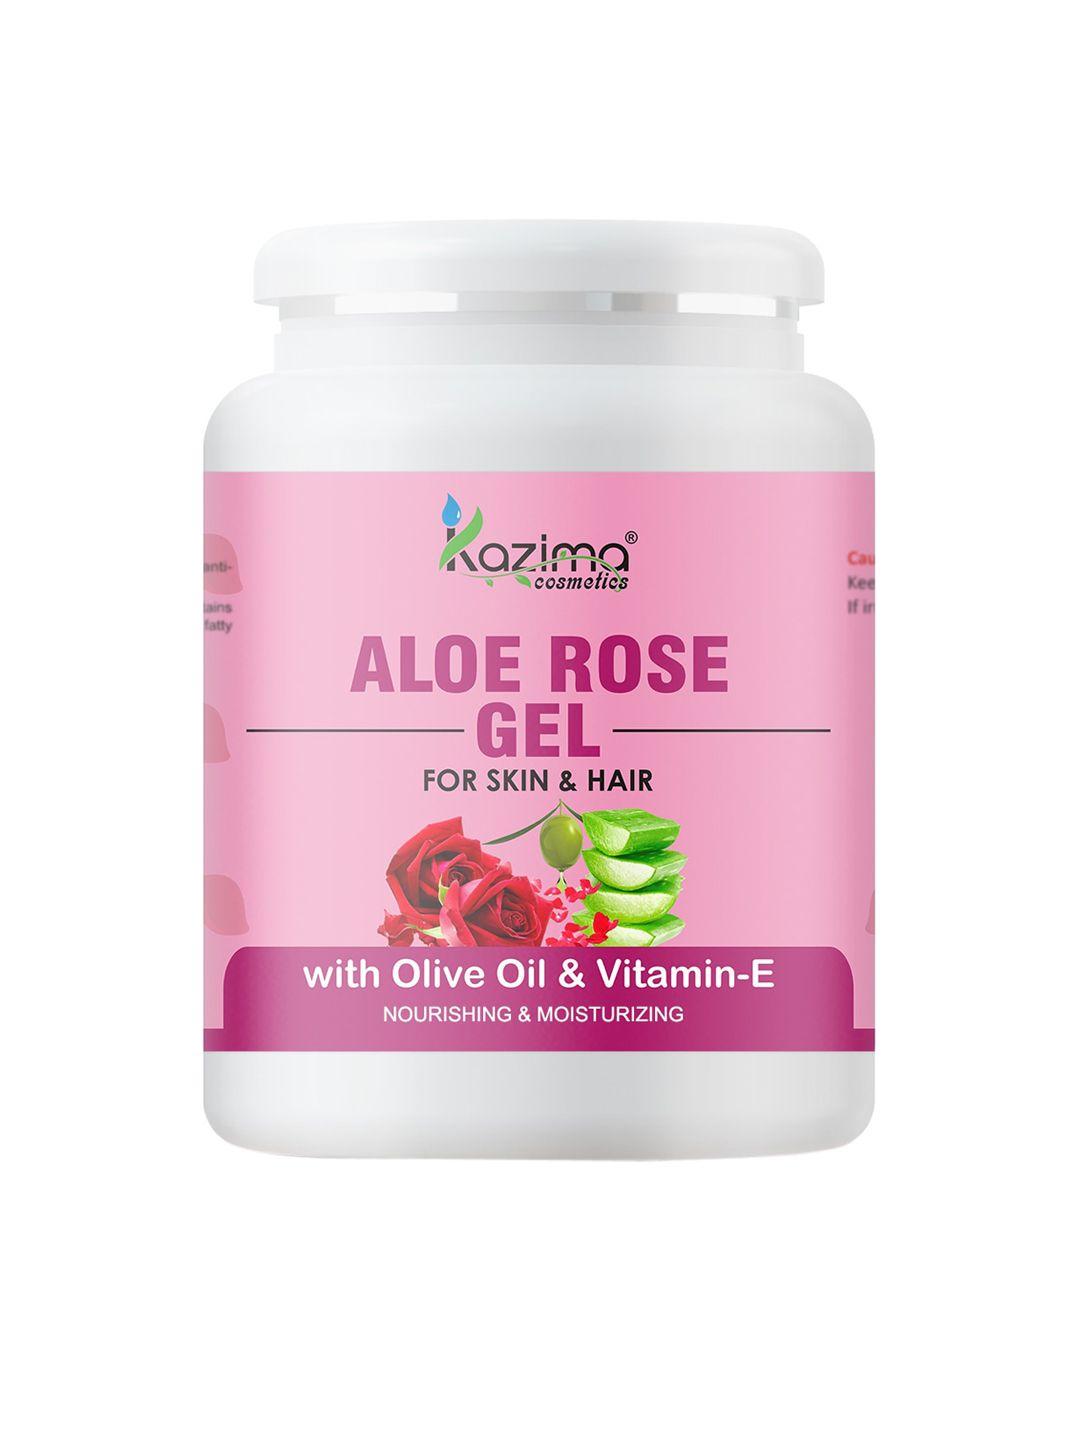 kazima aloe rose gel for skin & hair - 500g